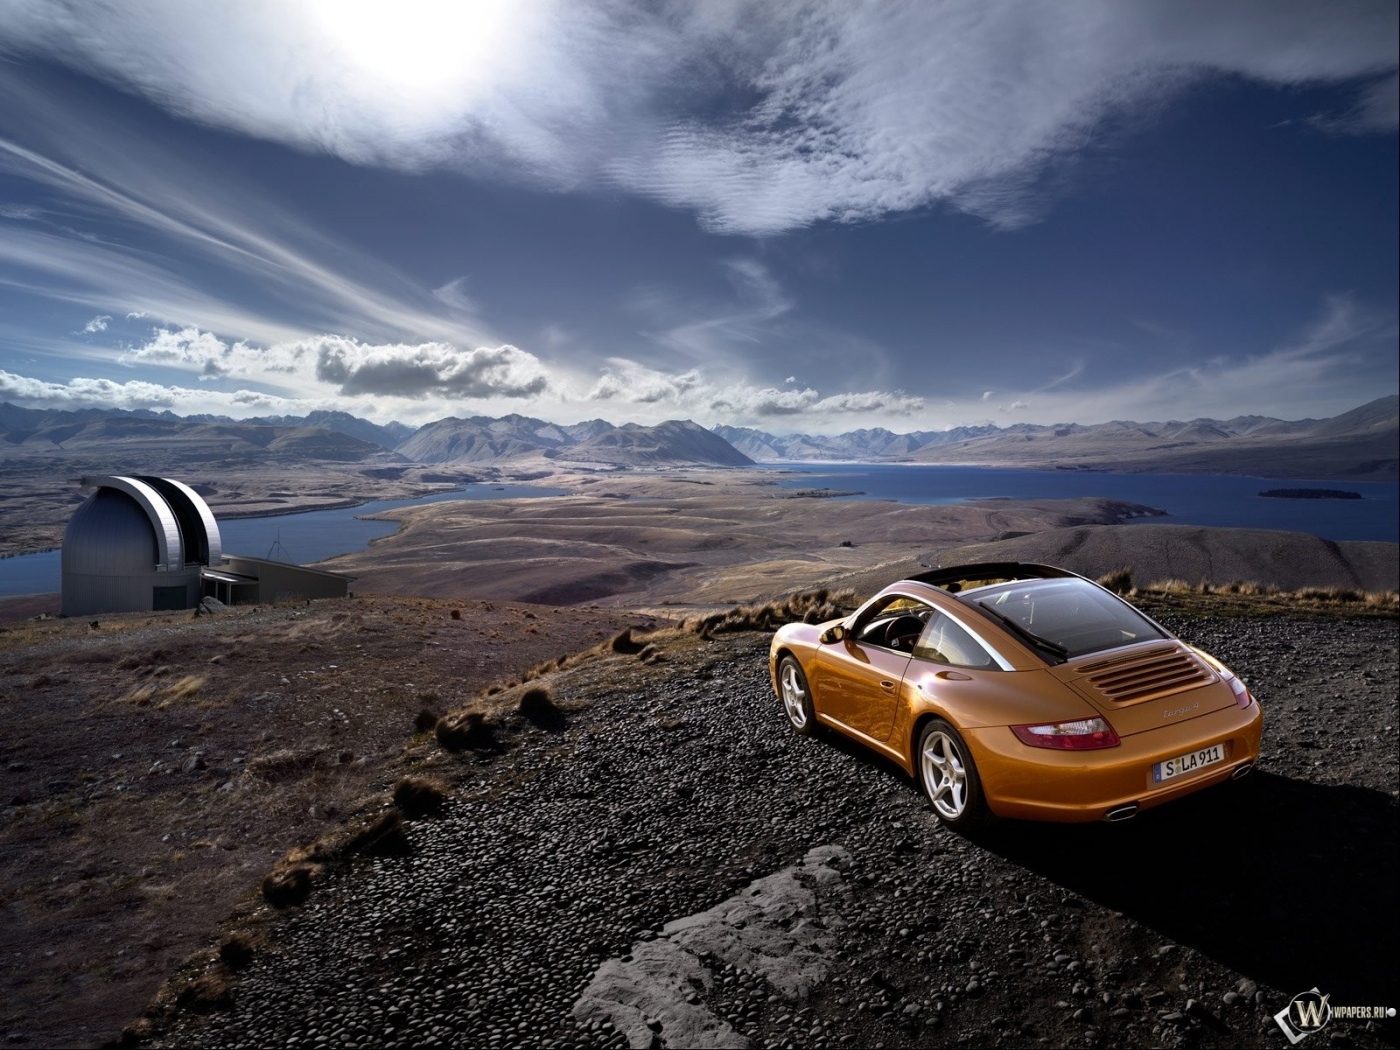 Free download wallpaper Transport, Landscape, Auto, Sky, Mountains, Clouds, Porsche on your PC desktop